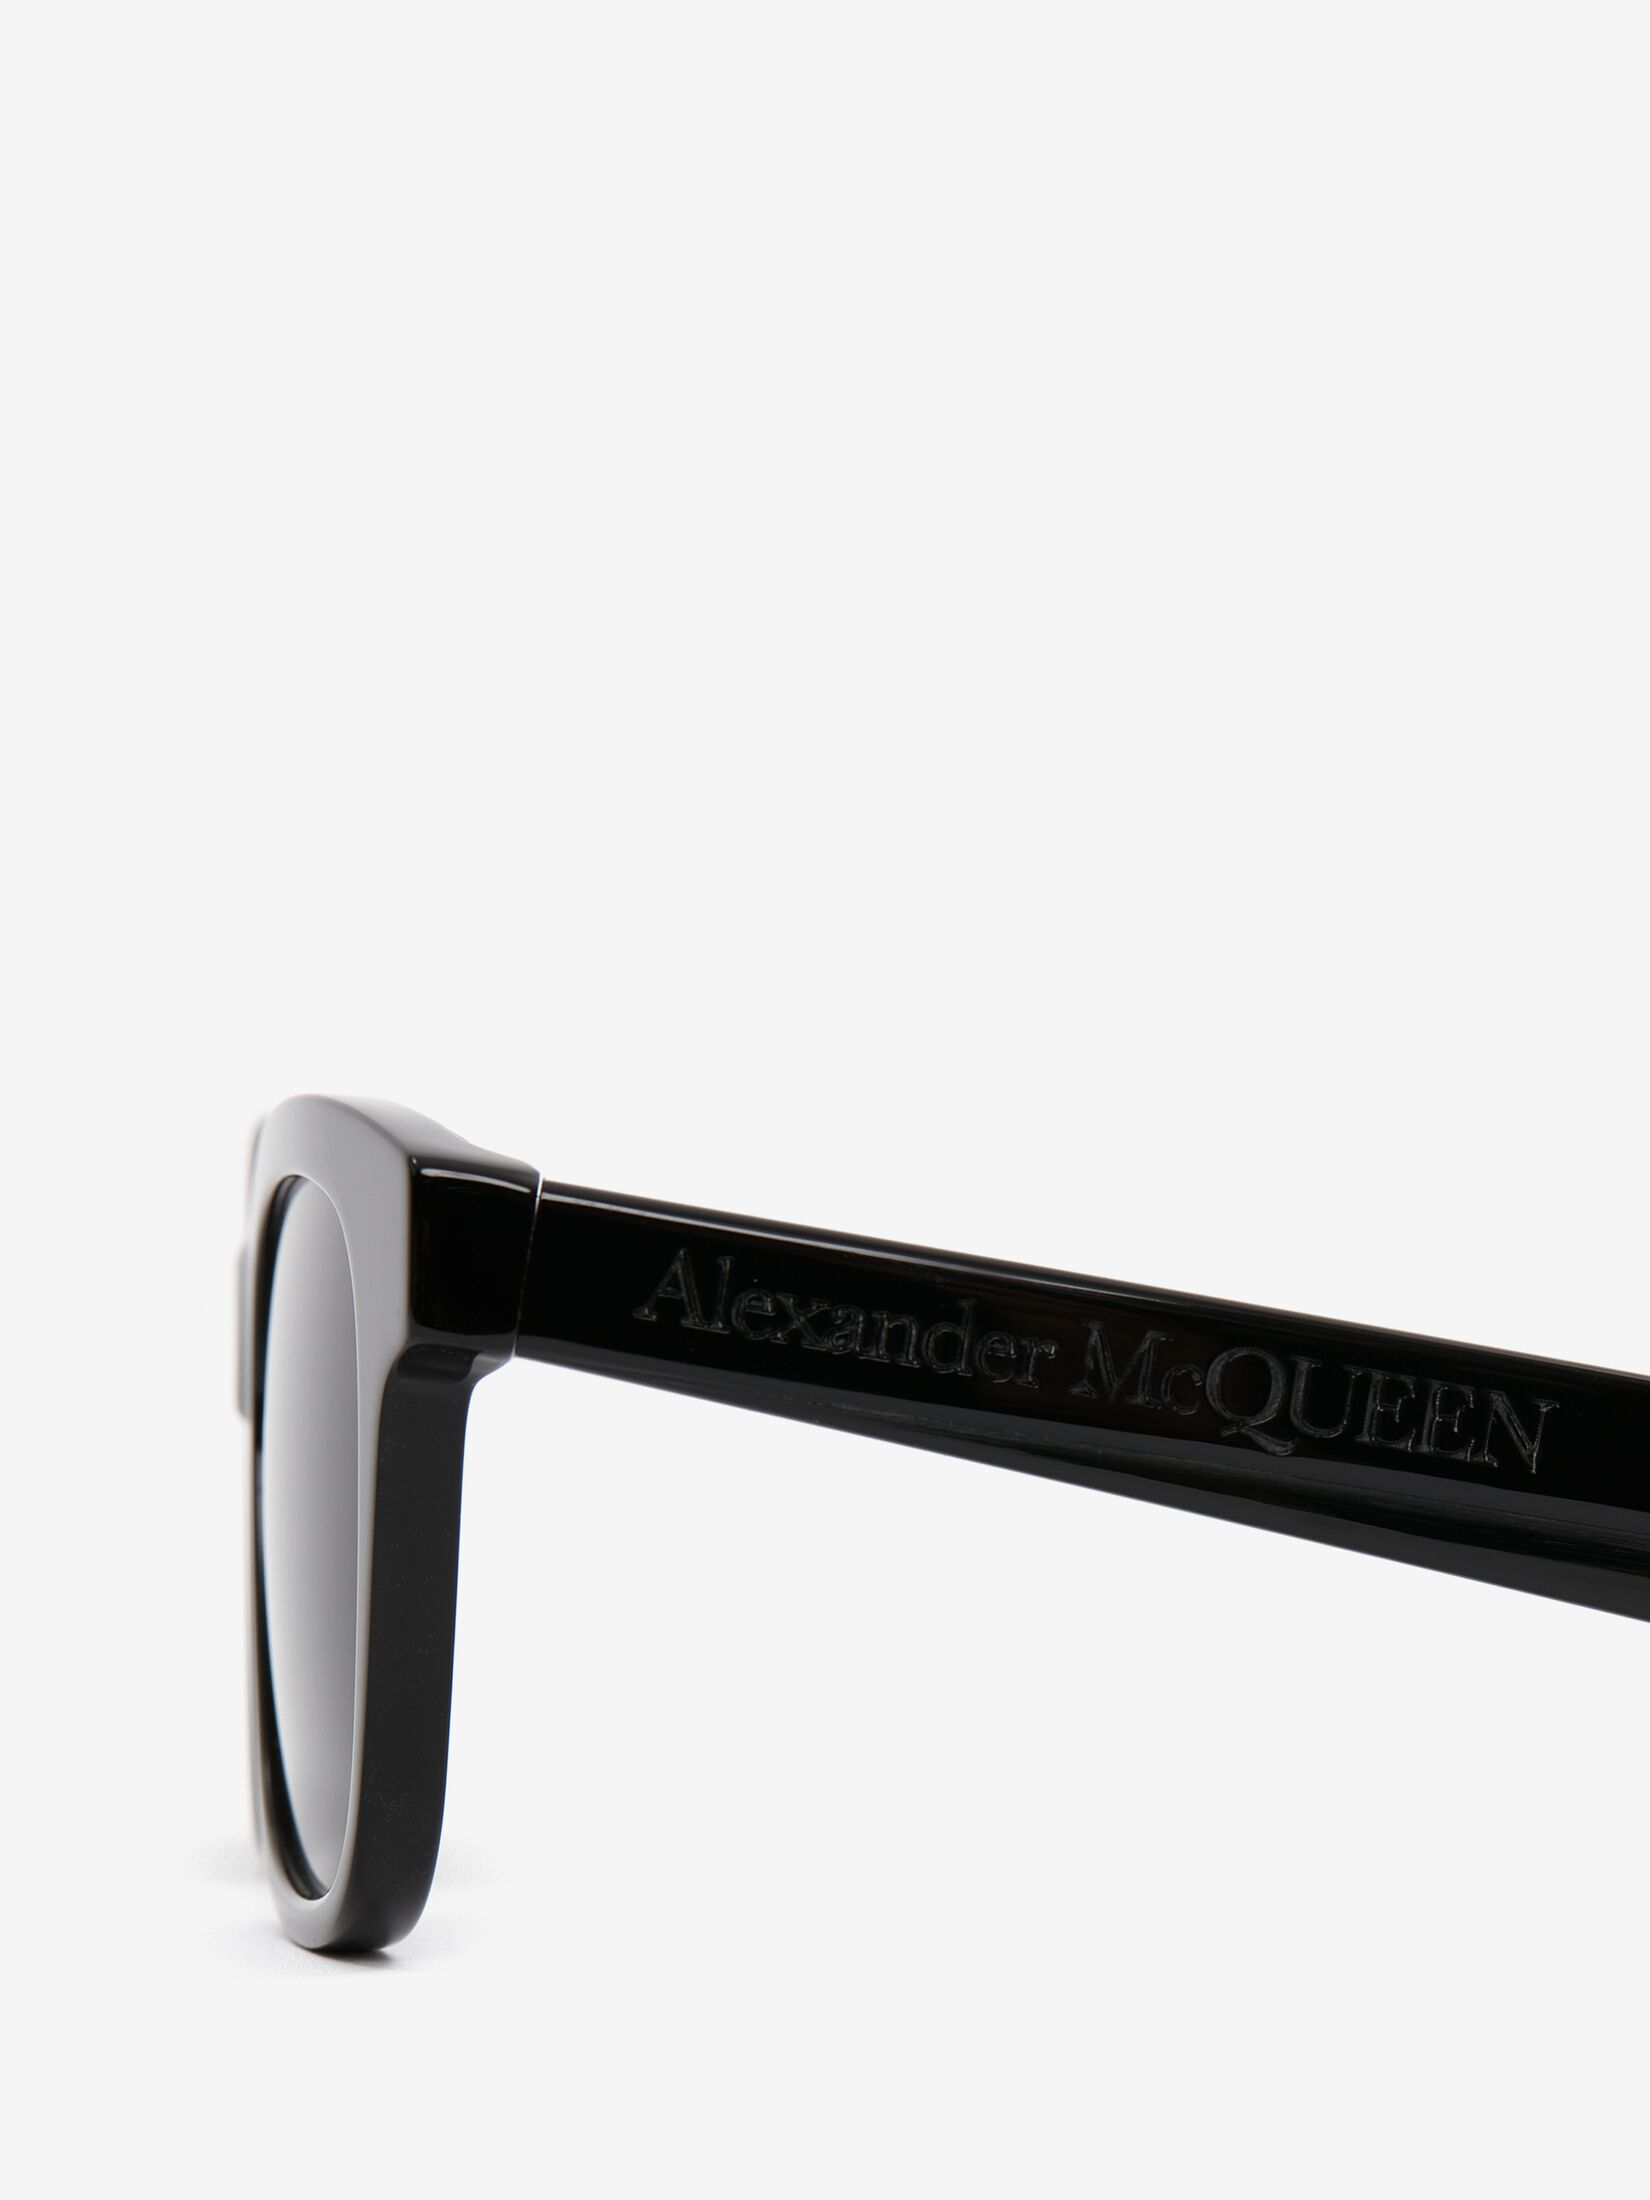 McQueen Angled Square Sunglasses